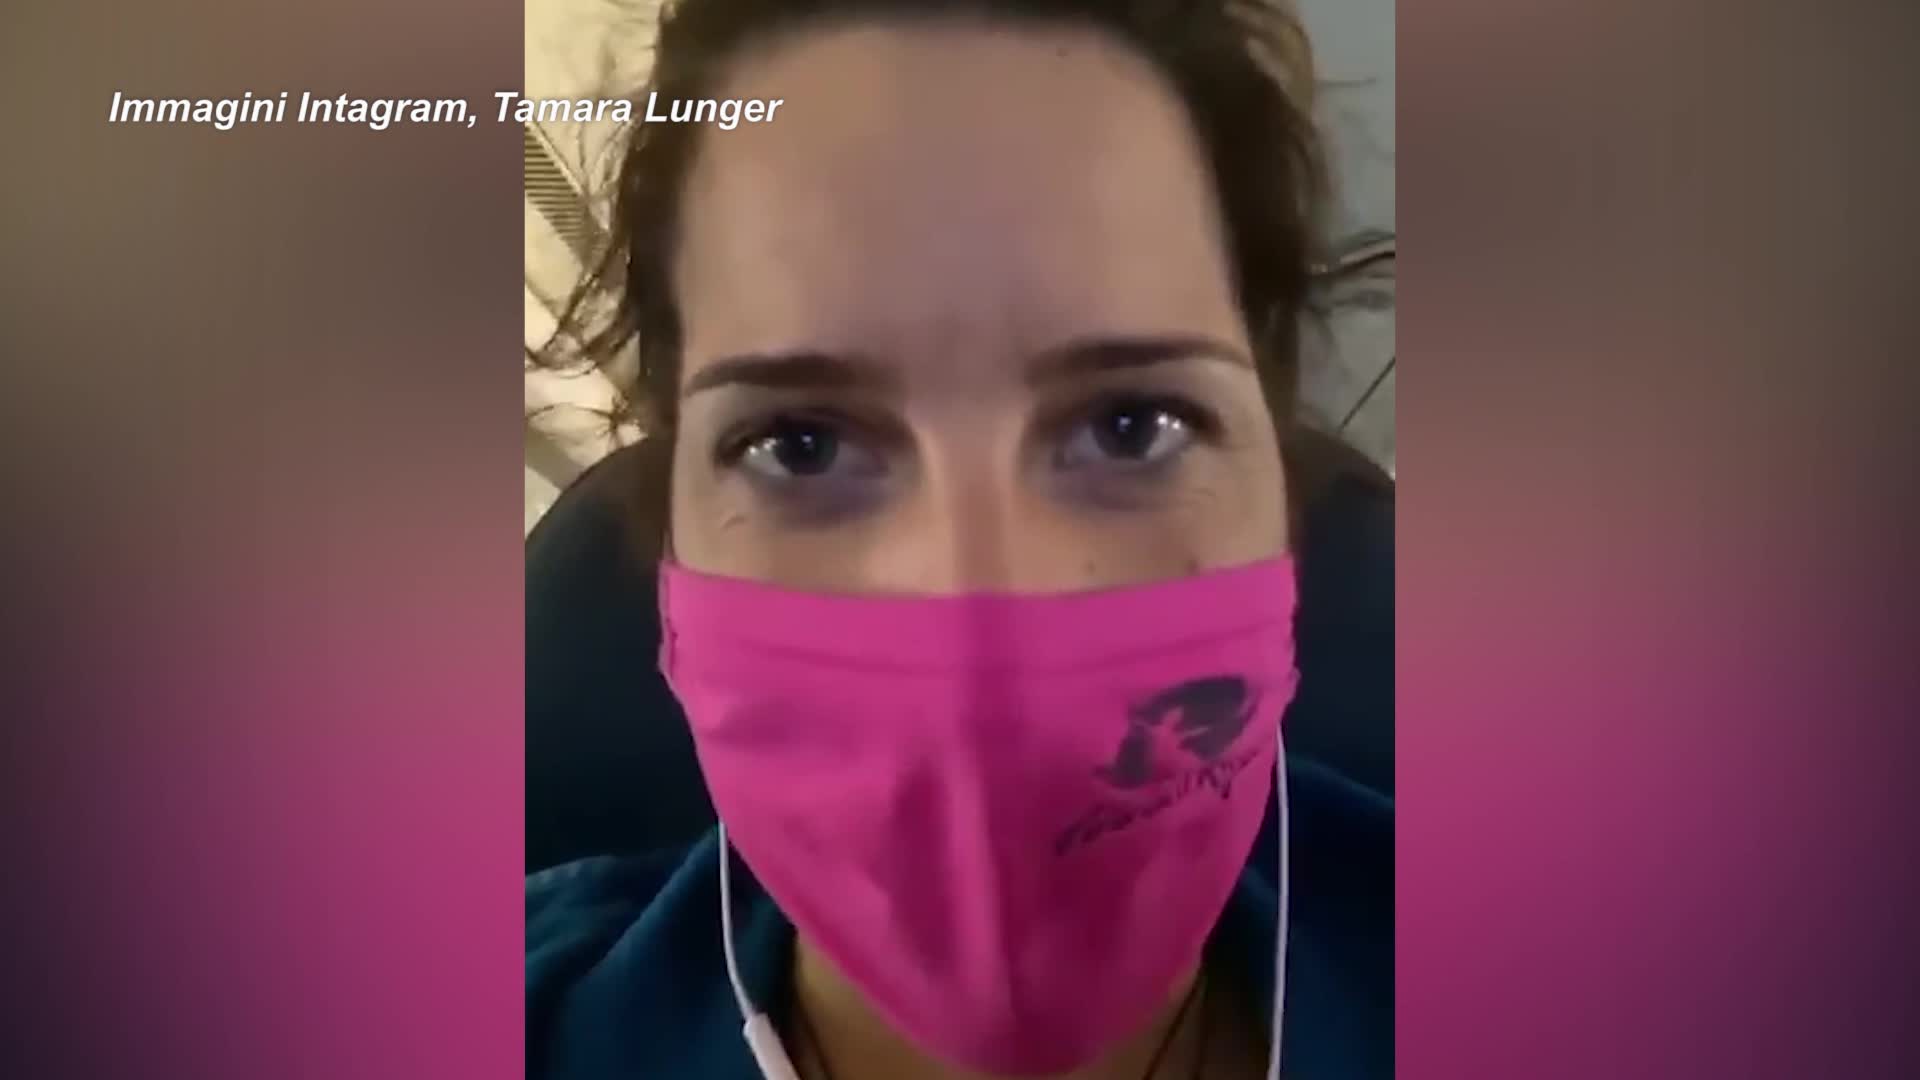 Tamara Lunger sfida il K2 in inverno e posta i video della partenza